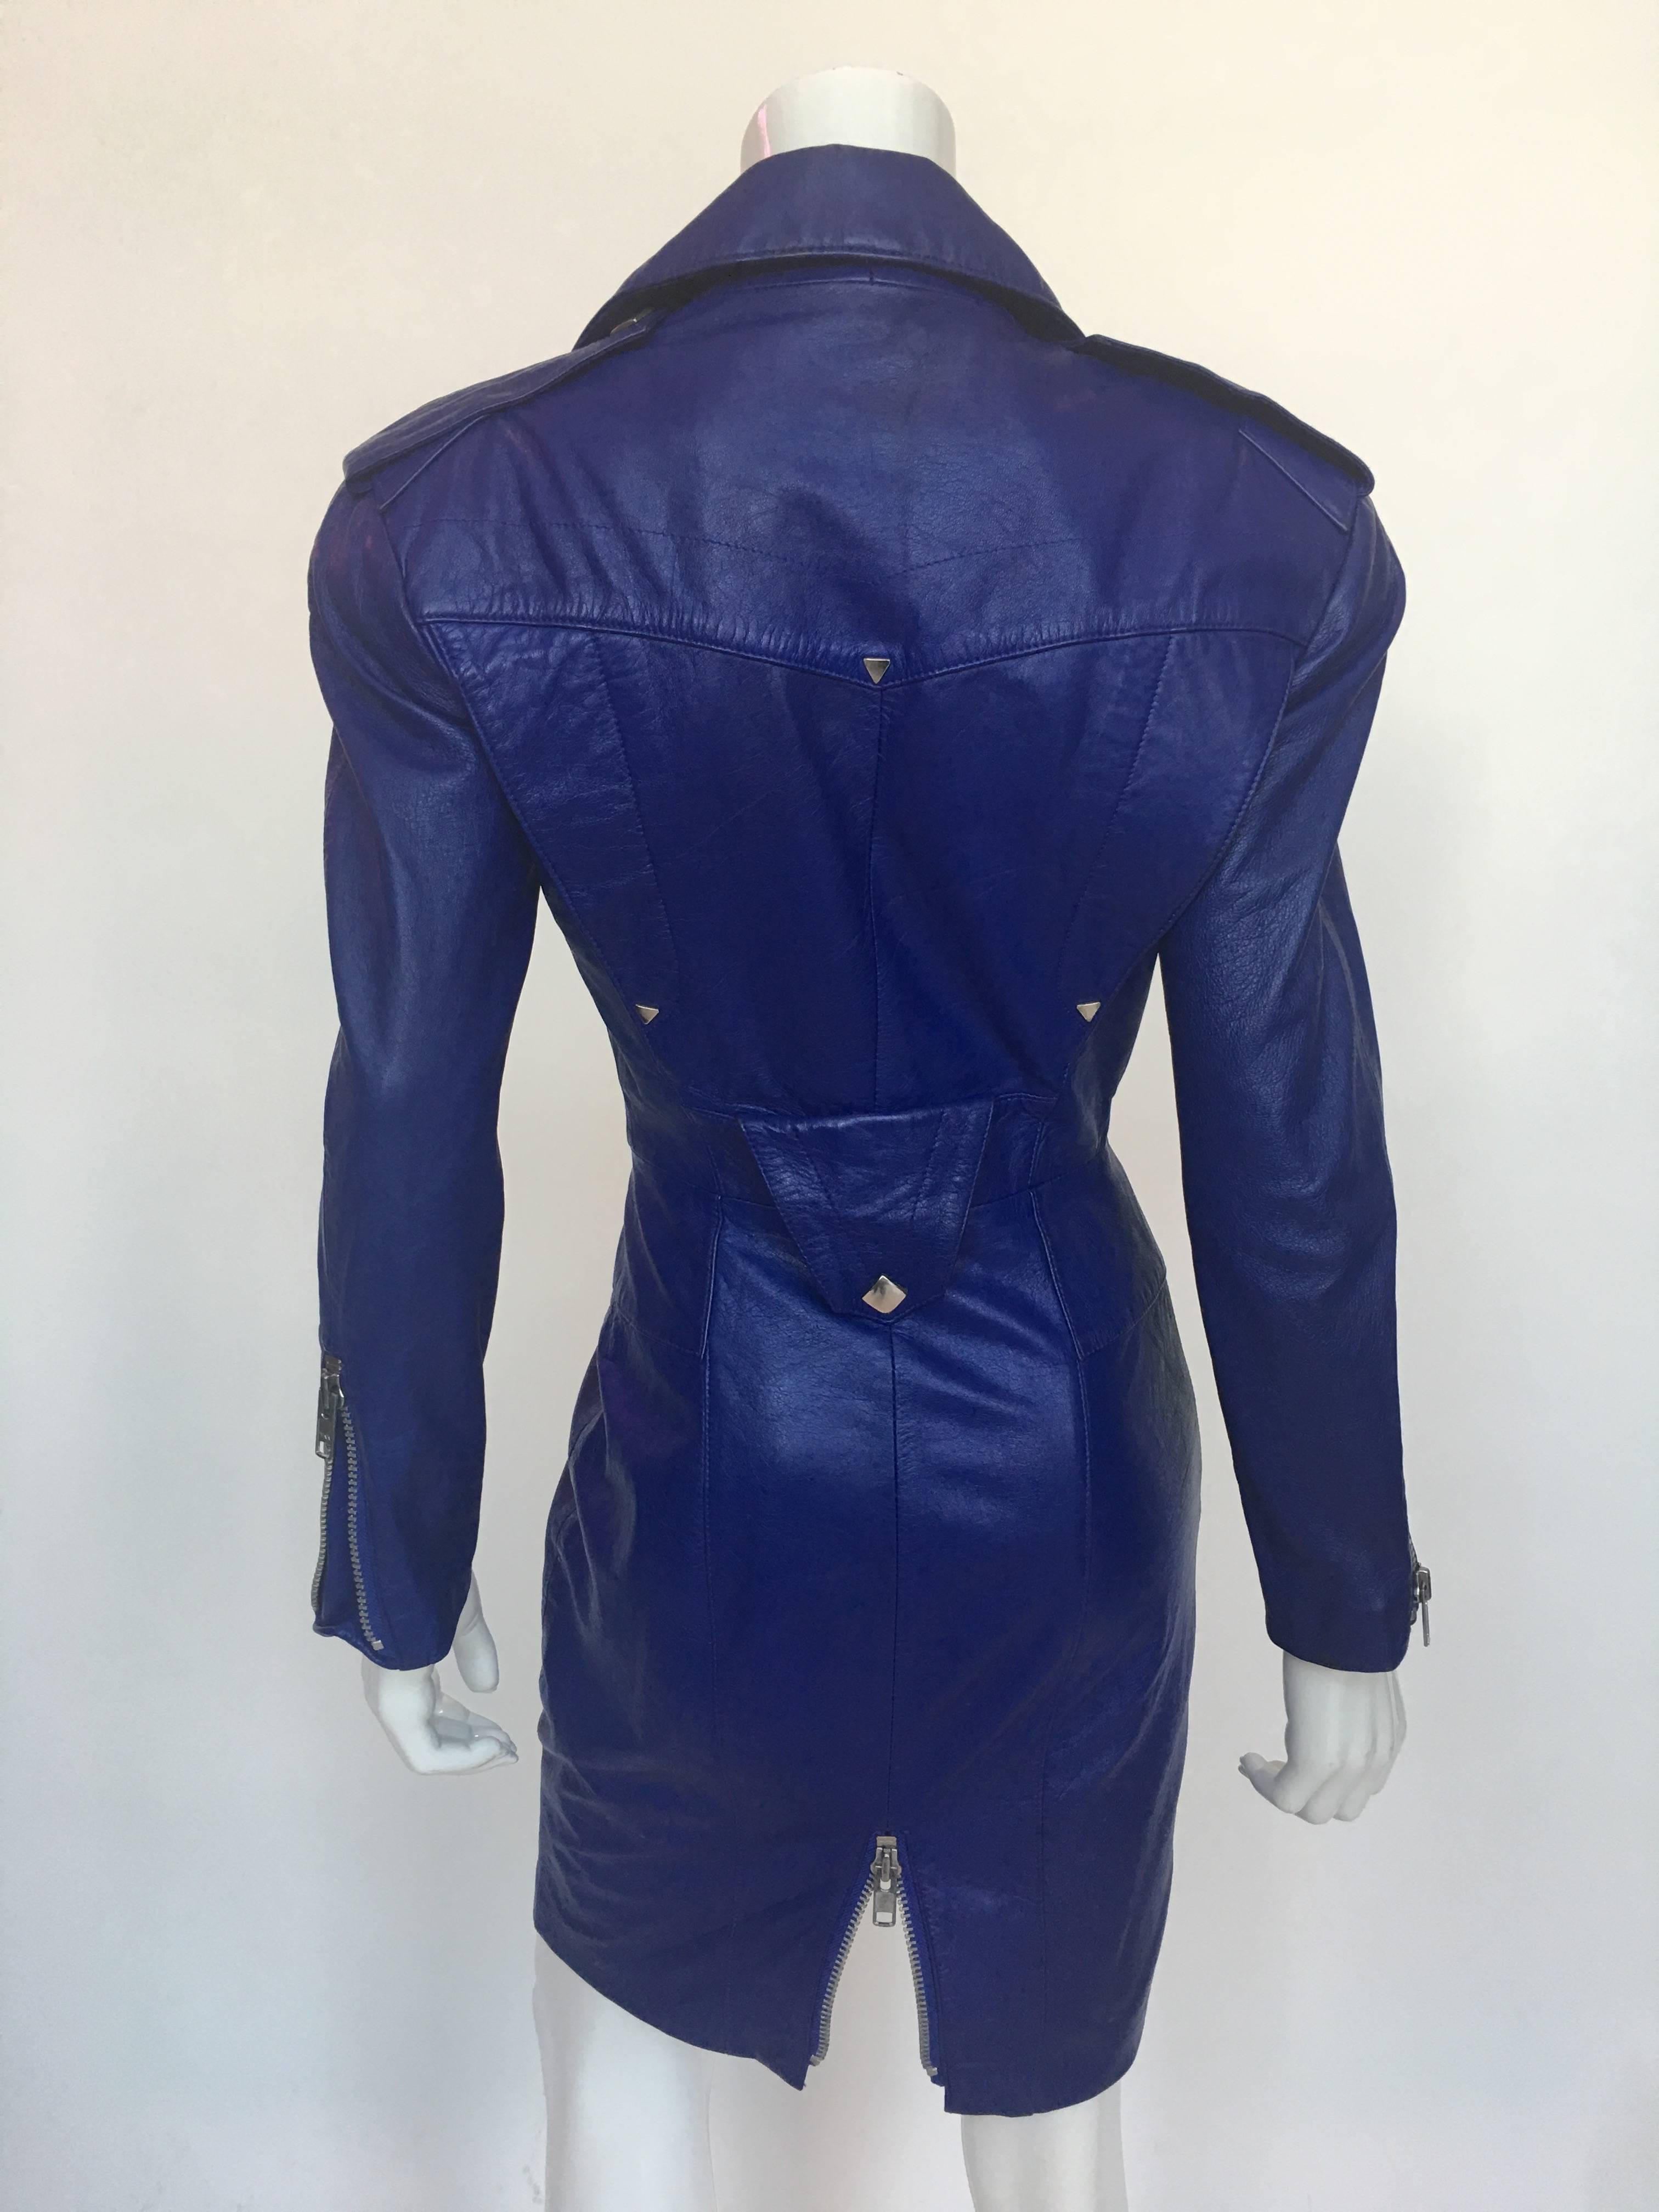 North Beach Leather Michael Hoban Robe Moto en cuir violet/bleu avec fermetures éclair.

Etiquette de taille - Petit

Mesures prises à plat :
De la couture d'épaule à la couture d'épaule : 19